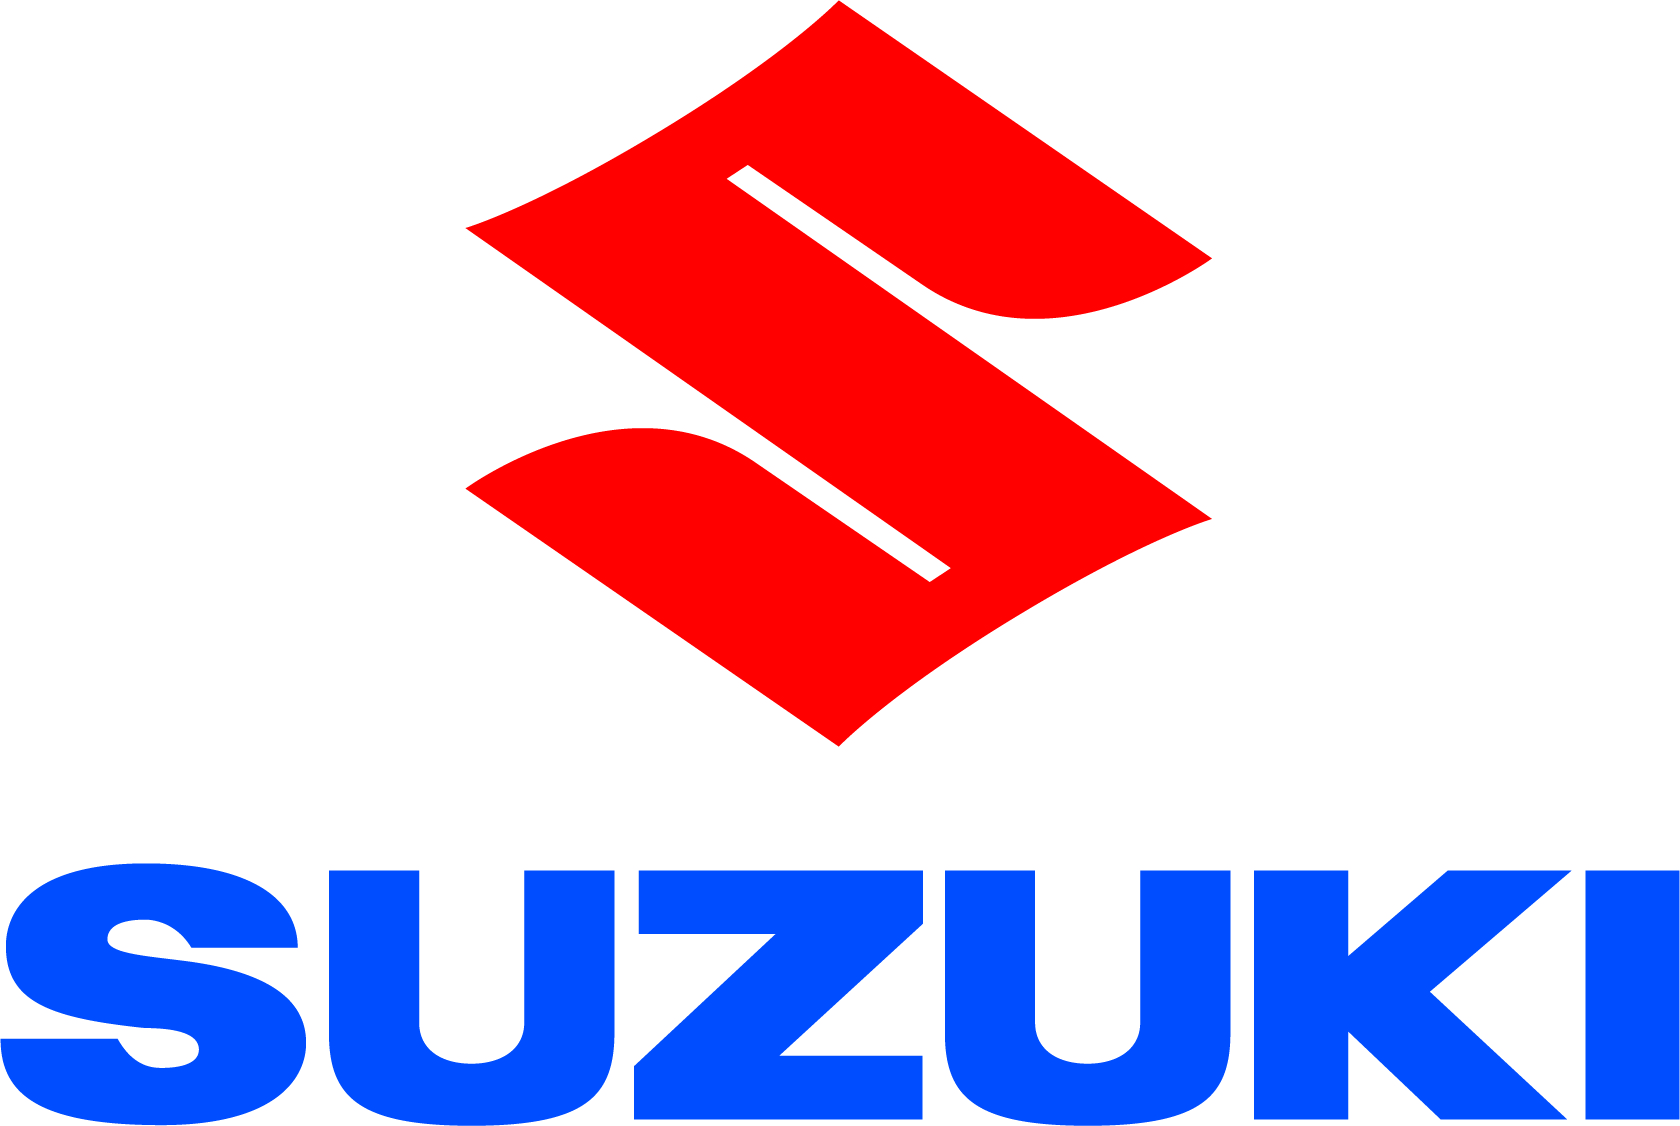 Suzuki_vertikal.jpg